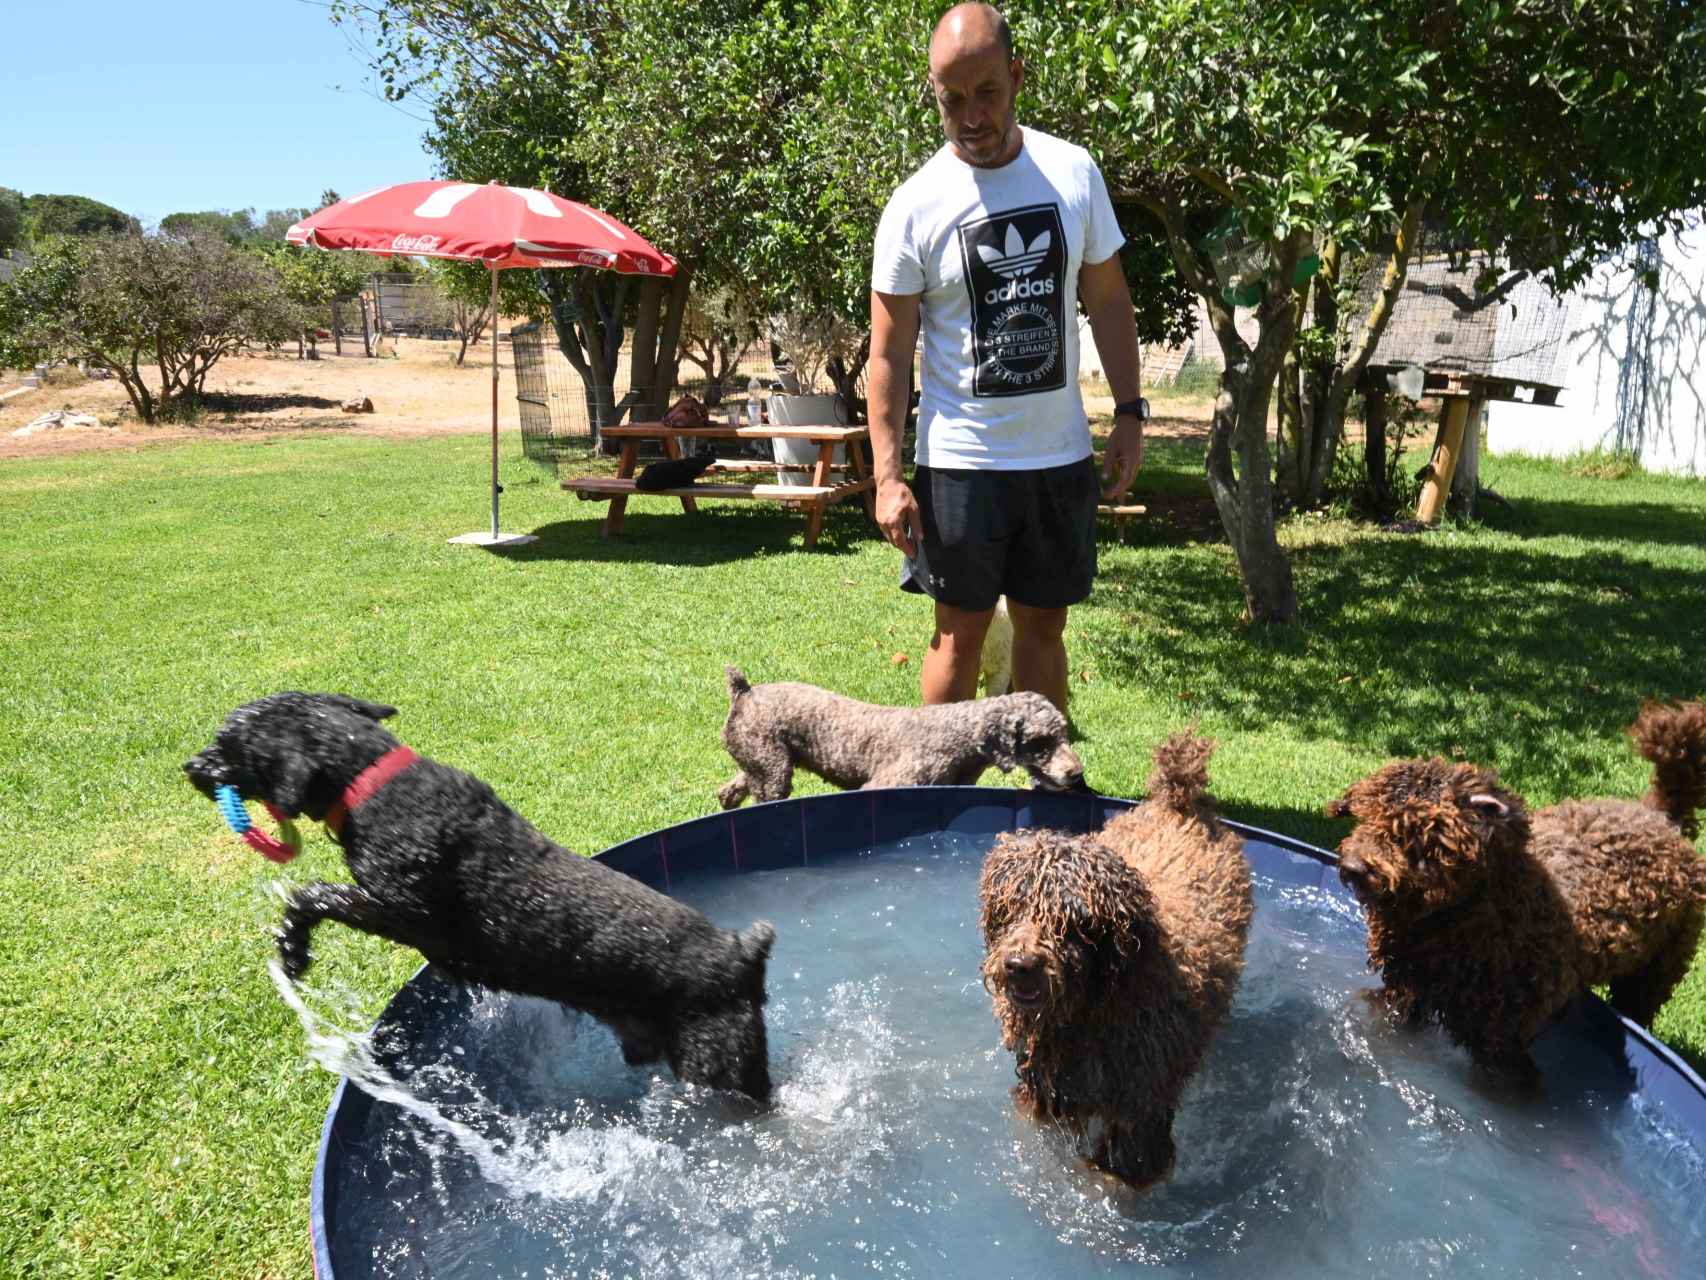 El criador juega con  varios de sus perros en una piscina portátil. El que salta es Lucero, hermano de Marley.